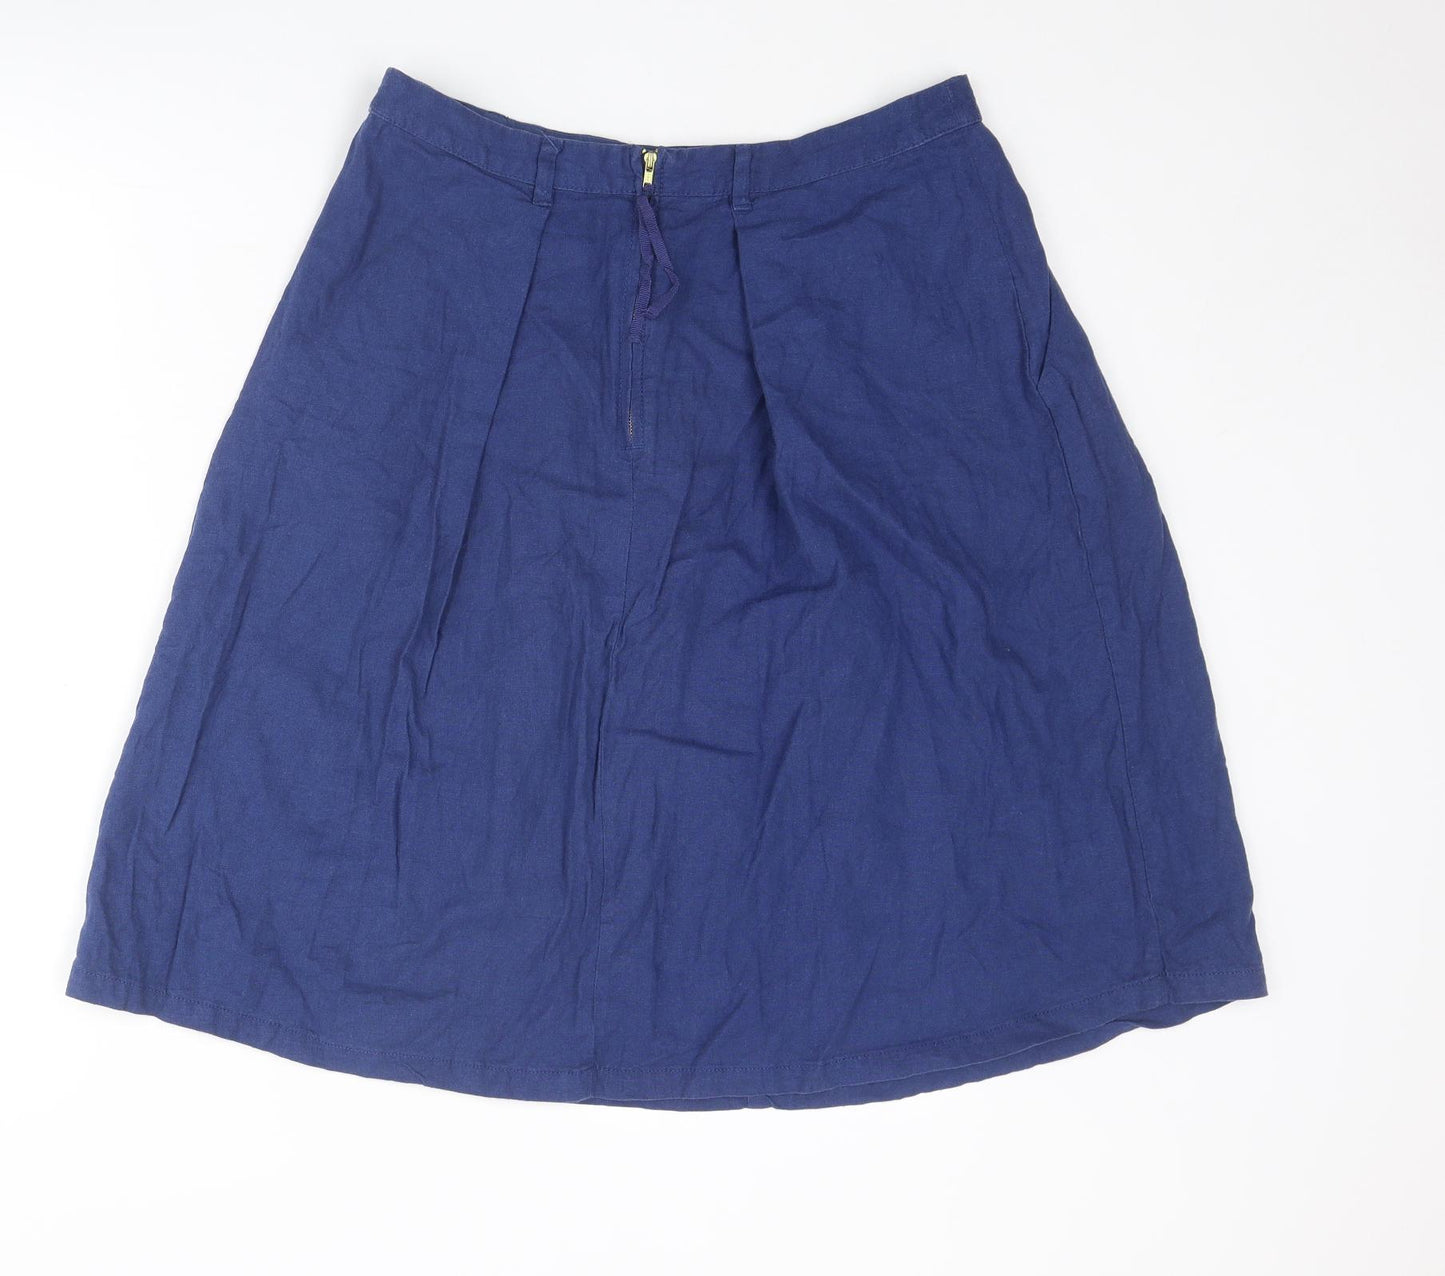 NEXT Womens Blue Linen A-Line Skirt Size 12 Zip